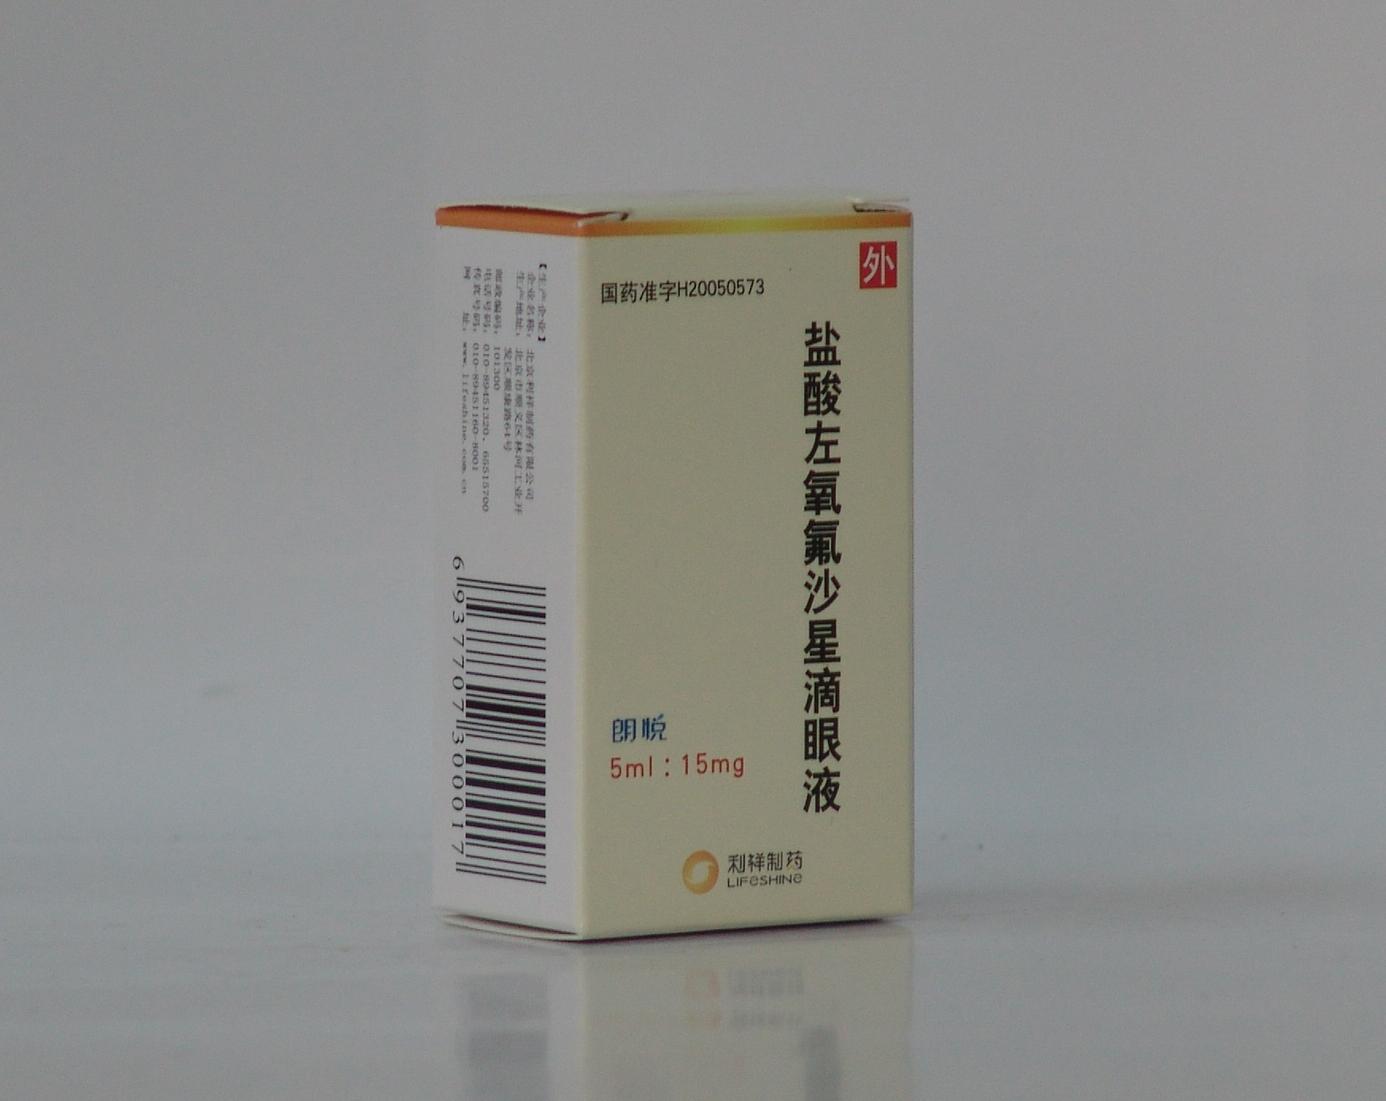 【朗悦】盐酸左氧氟沙星滴眼液-北京利祥制药有限公司